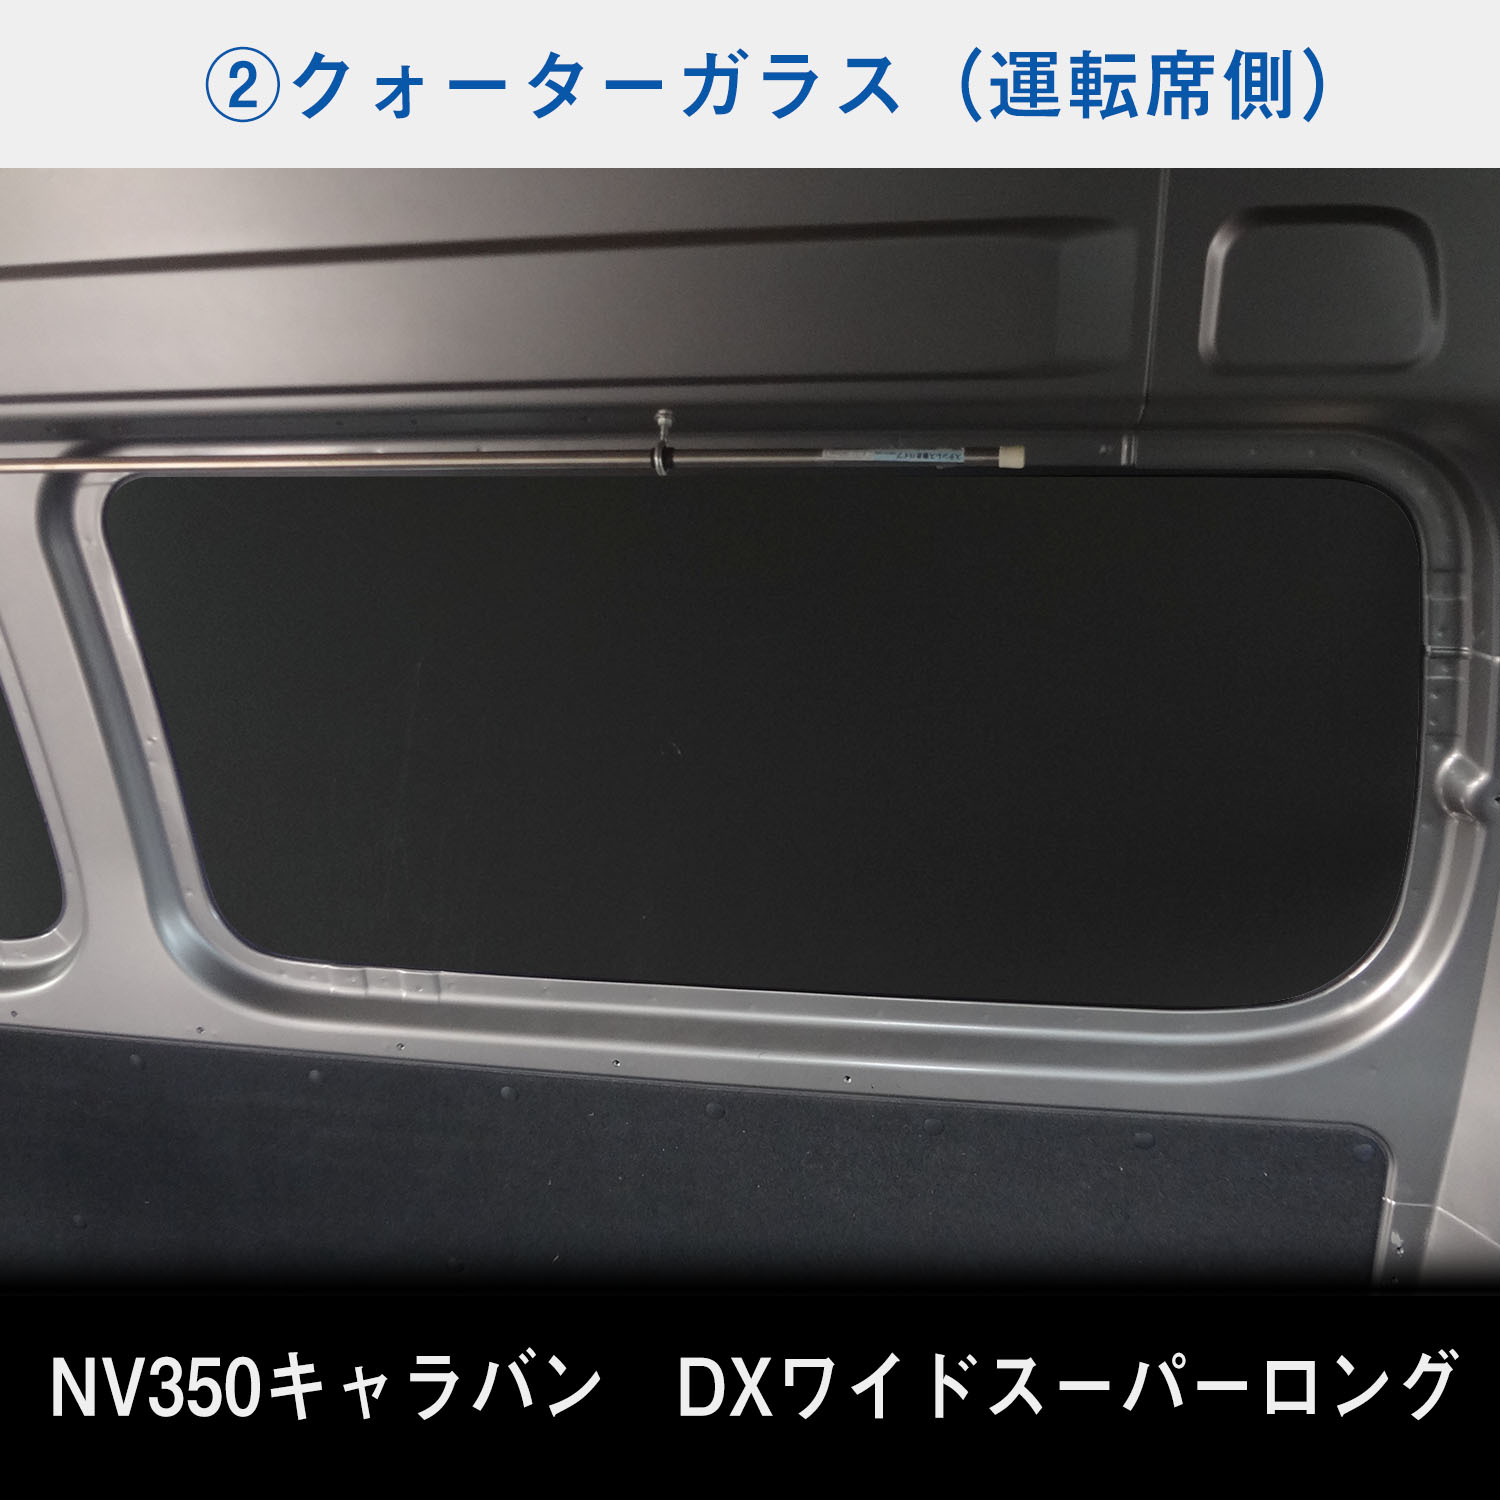 【全国無料SALE】NV350 キャラバン スーパーロングDX ワイドボディ フロアパネル L 日産用